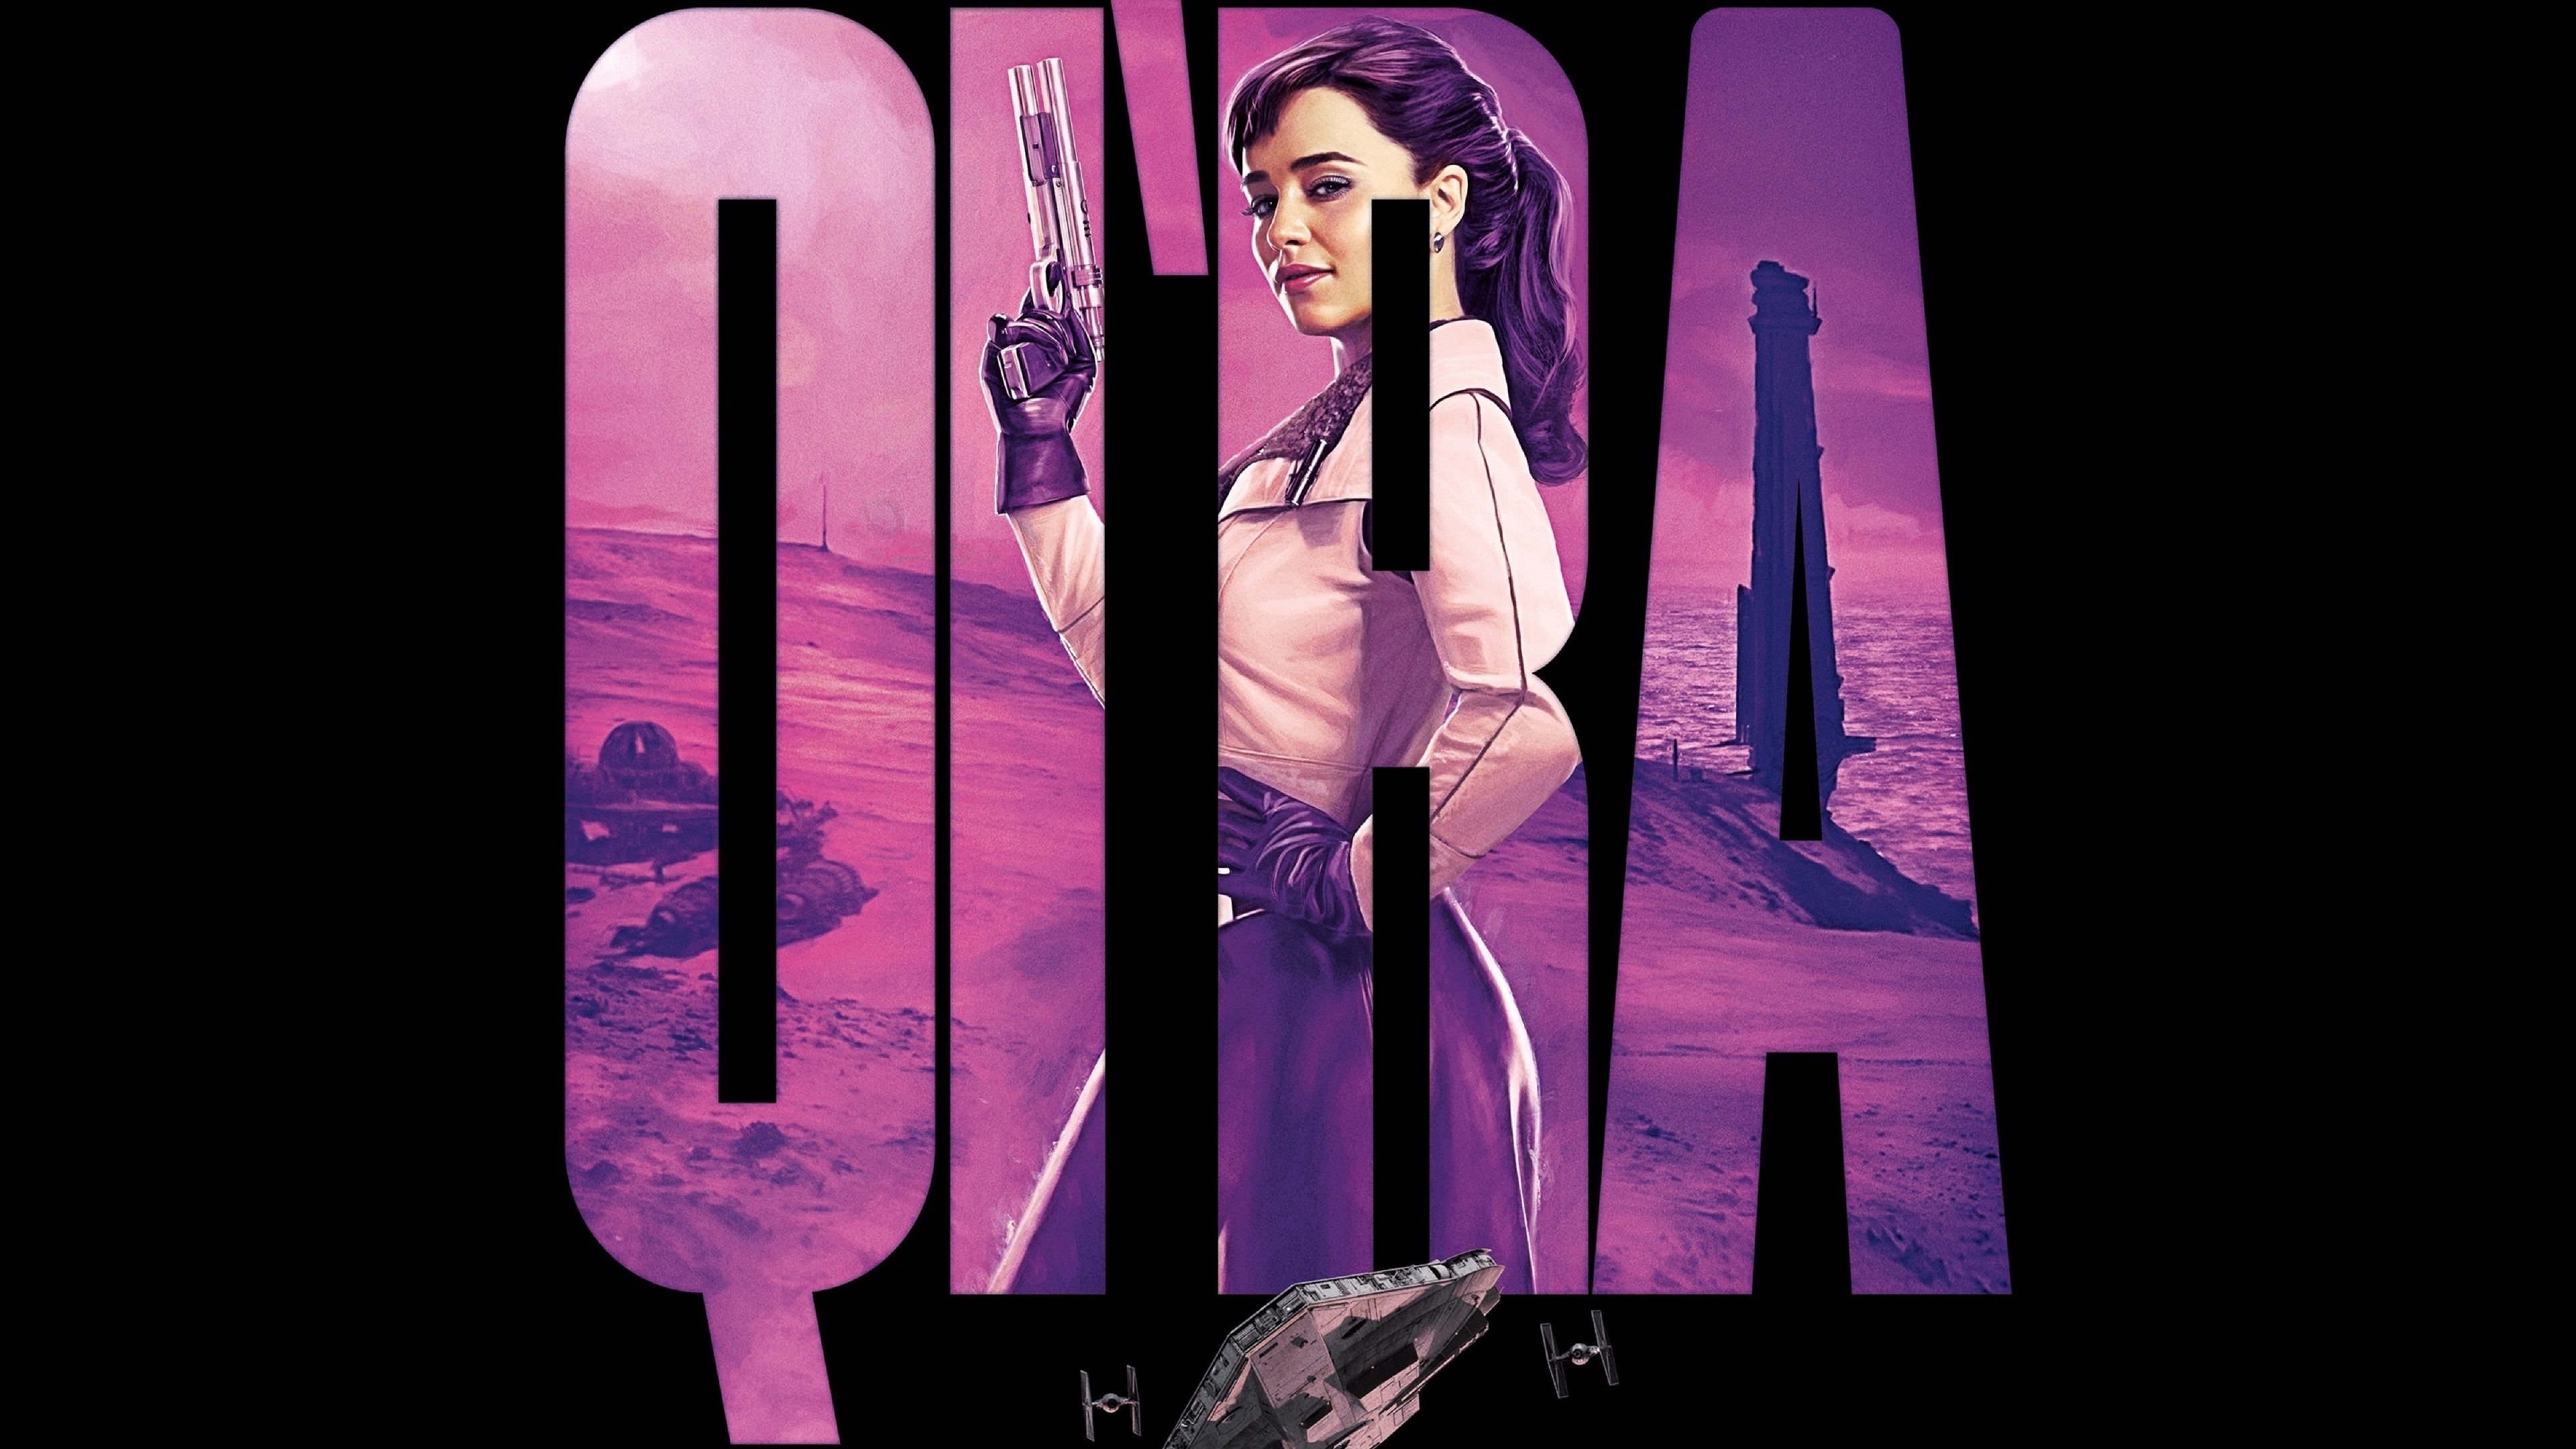 Emilia Clarke As Kira Star Wars Art 4K Wallpaper, HD